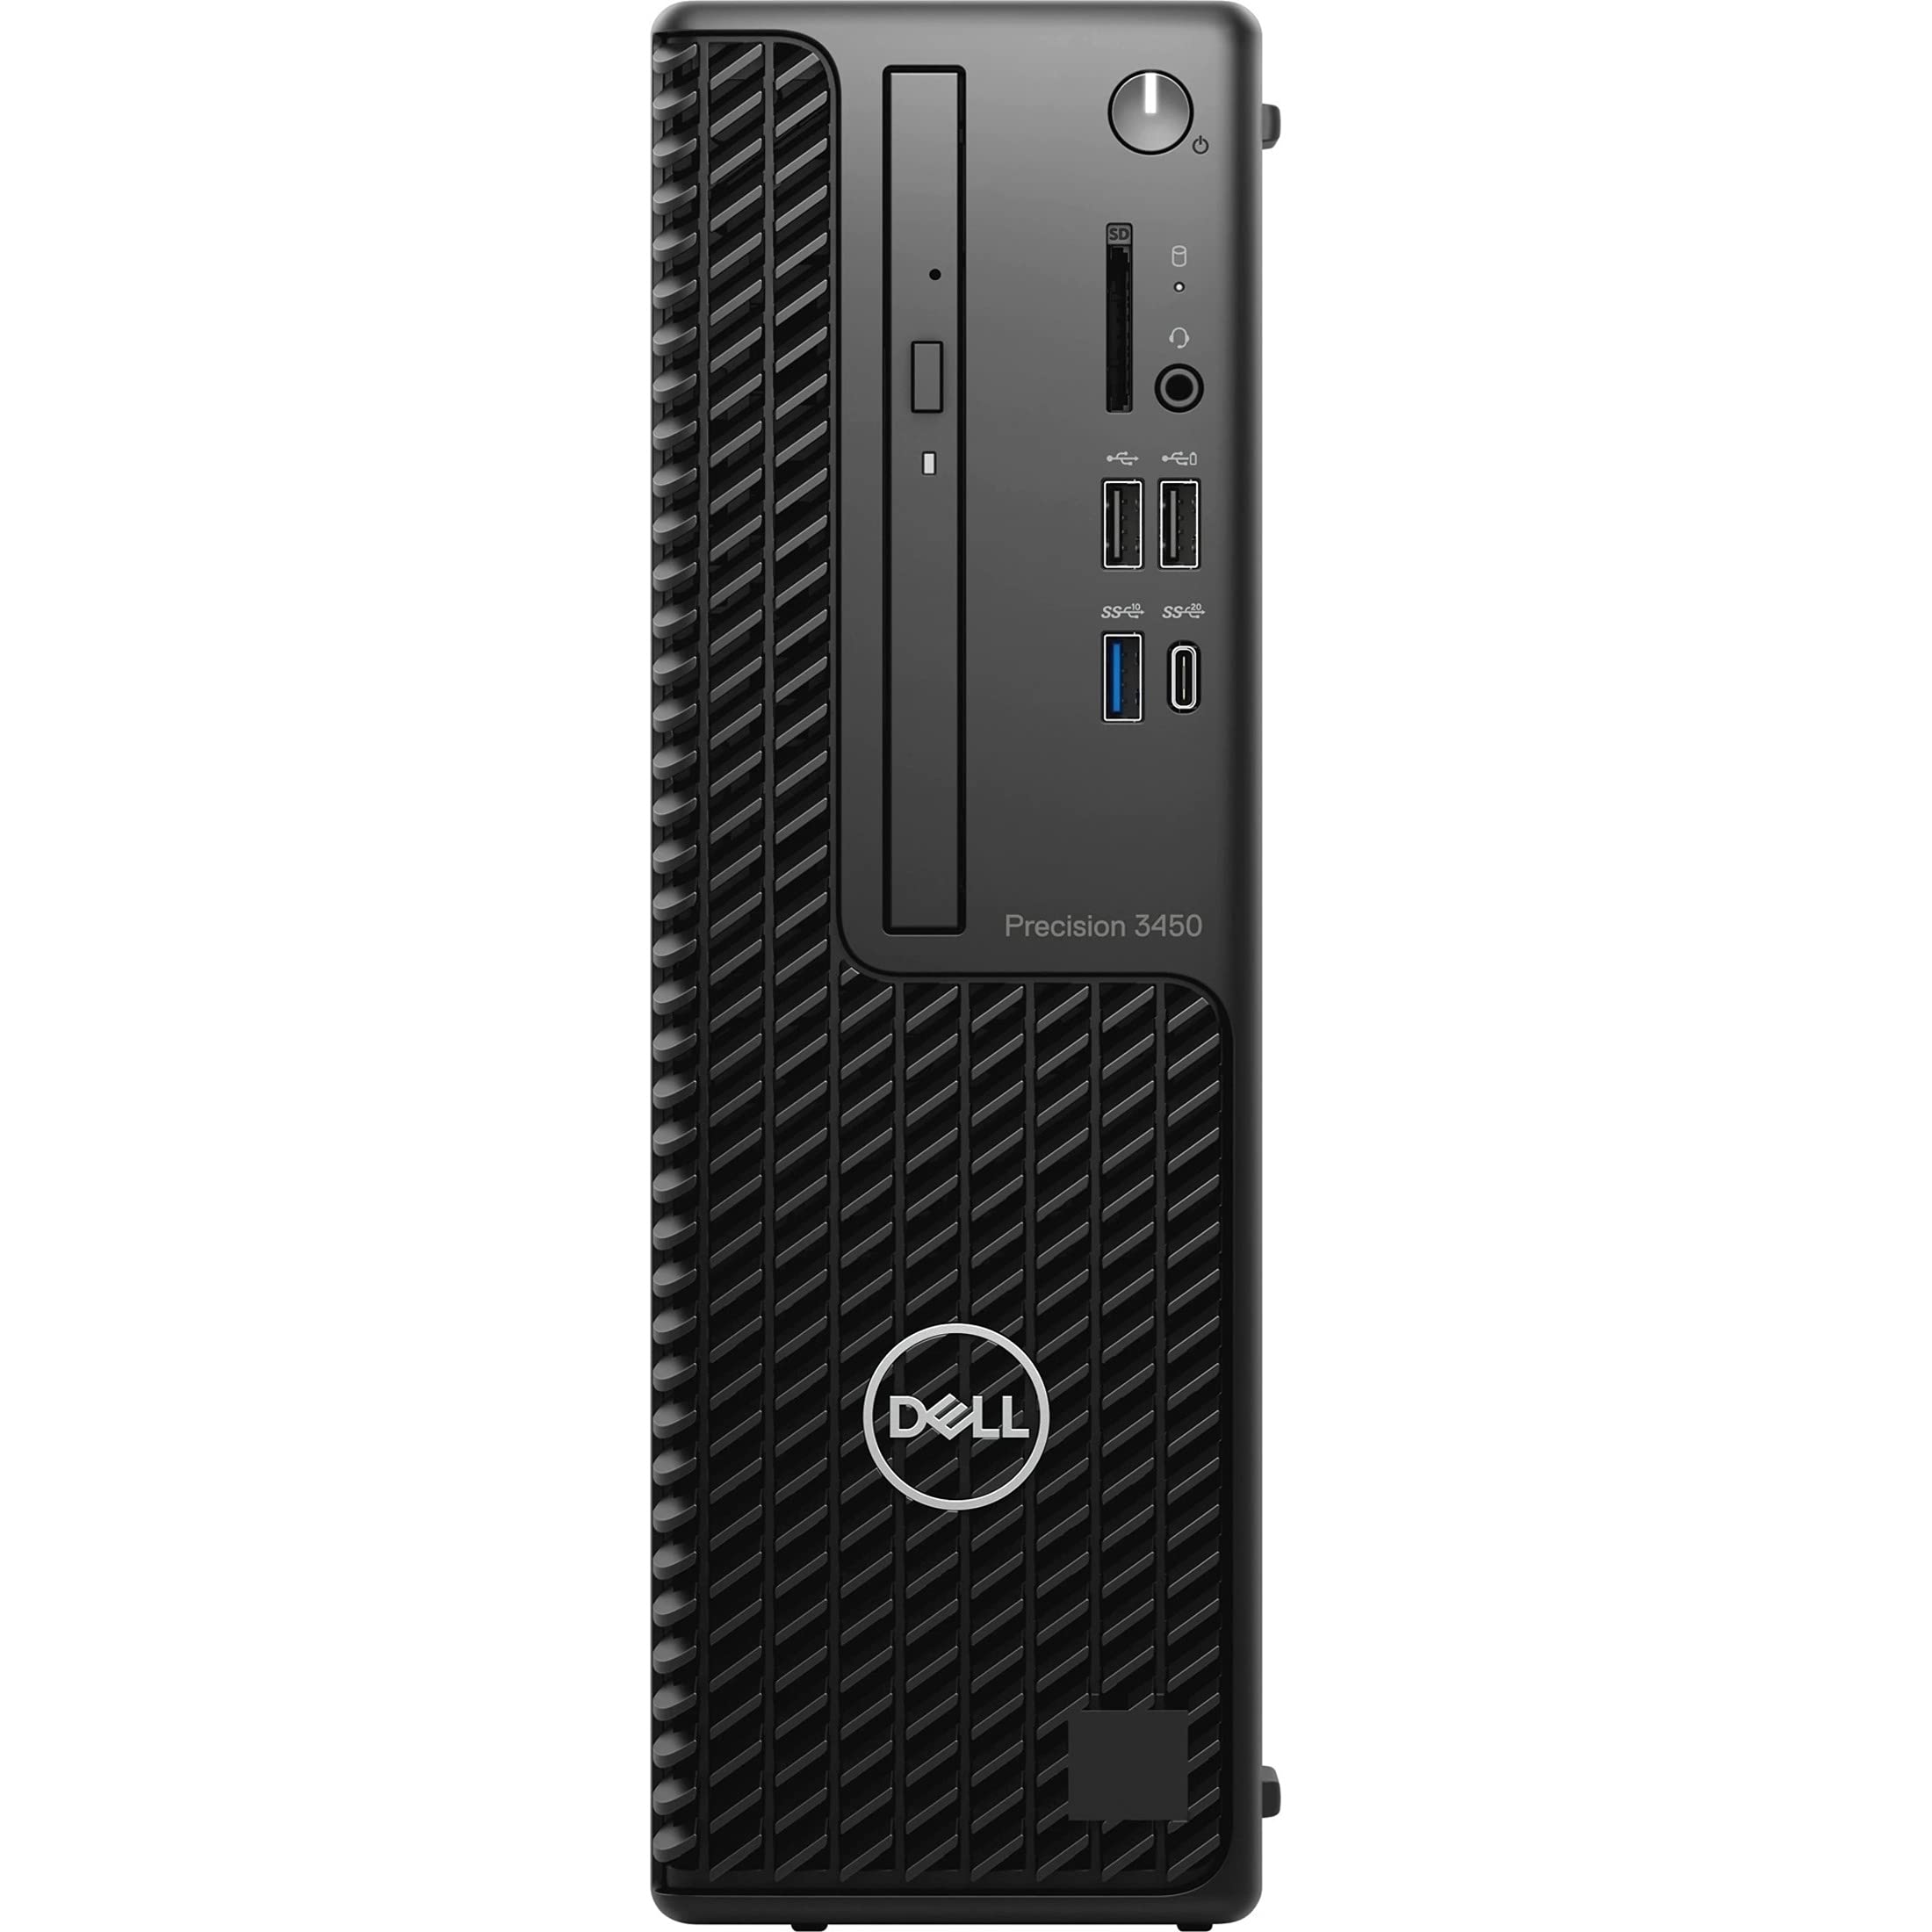 Dell Precision 3000 3450 Workstation - Intel Core i7 Octa-core (8 Core) i7-10700 10th Gen 2.90 GHz - 16 GB DDR4 SDRAM RAM - 512 GB SSD - Small Form Factor - Black